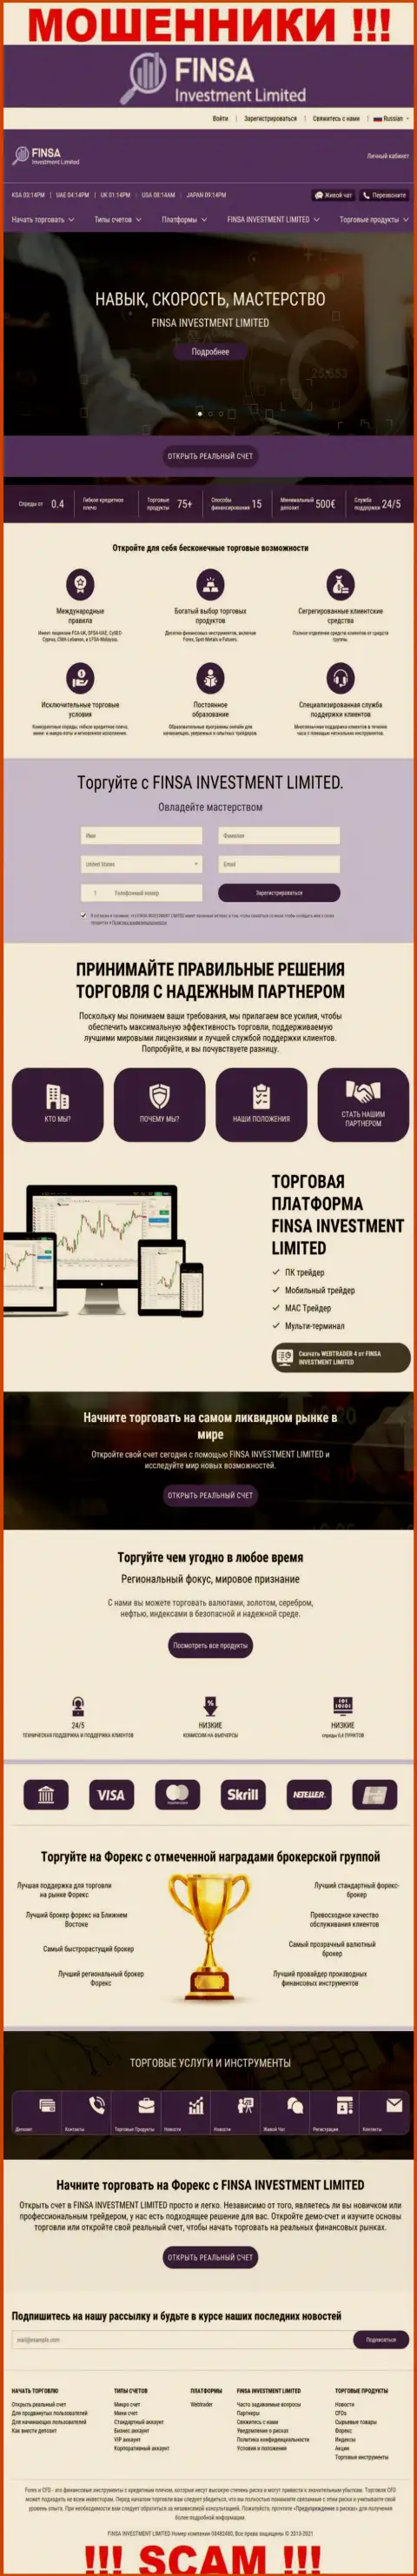 Сайт конторы FinsaInvestmentLimited, переполненный неправдивой информацией